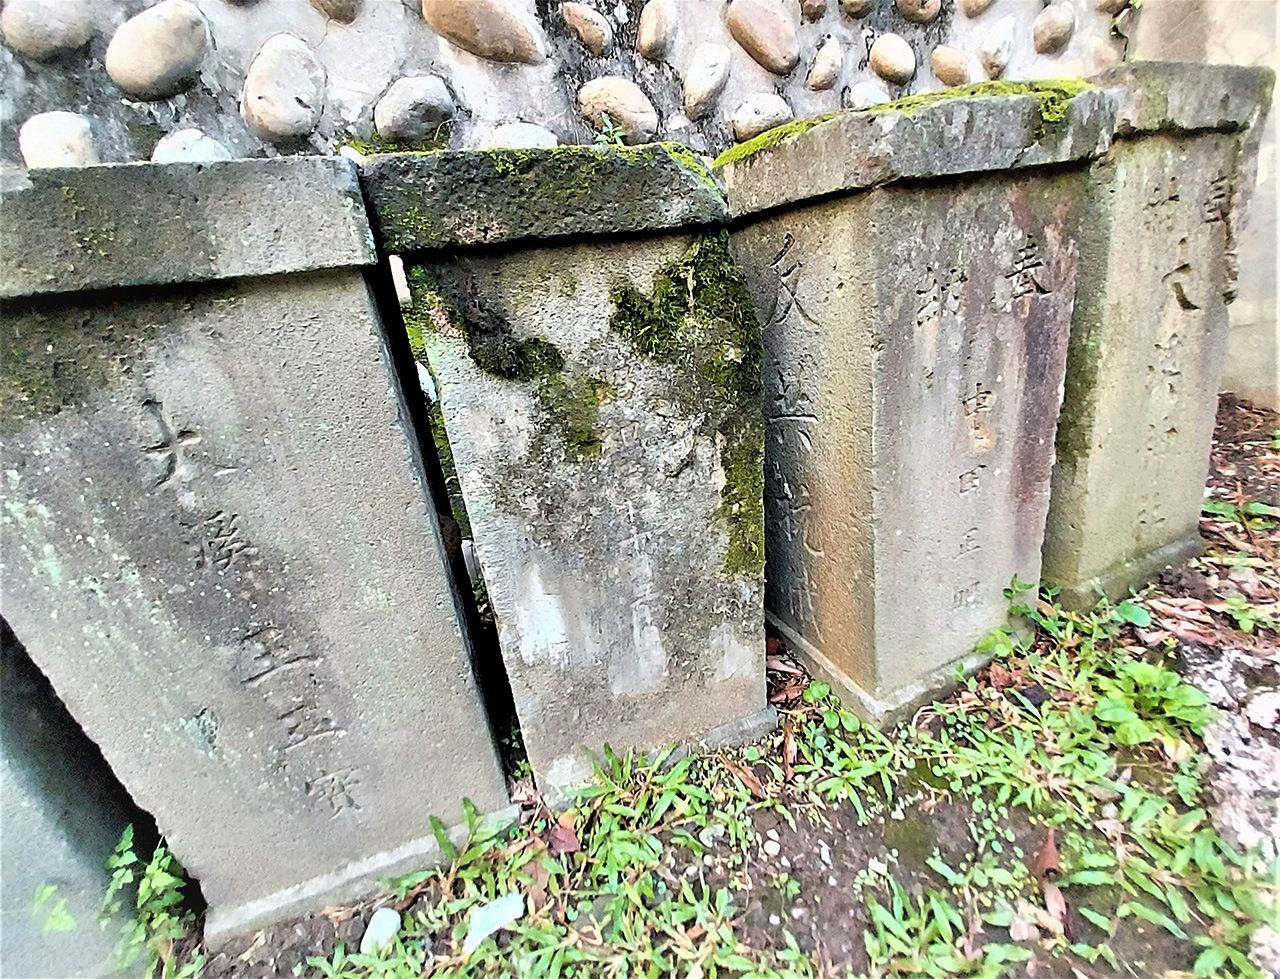 「大溪神社」遺跡，供奉石柱，側面刻有「反共抗俄」字樣。